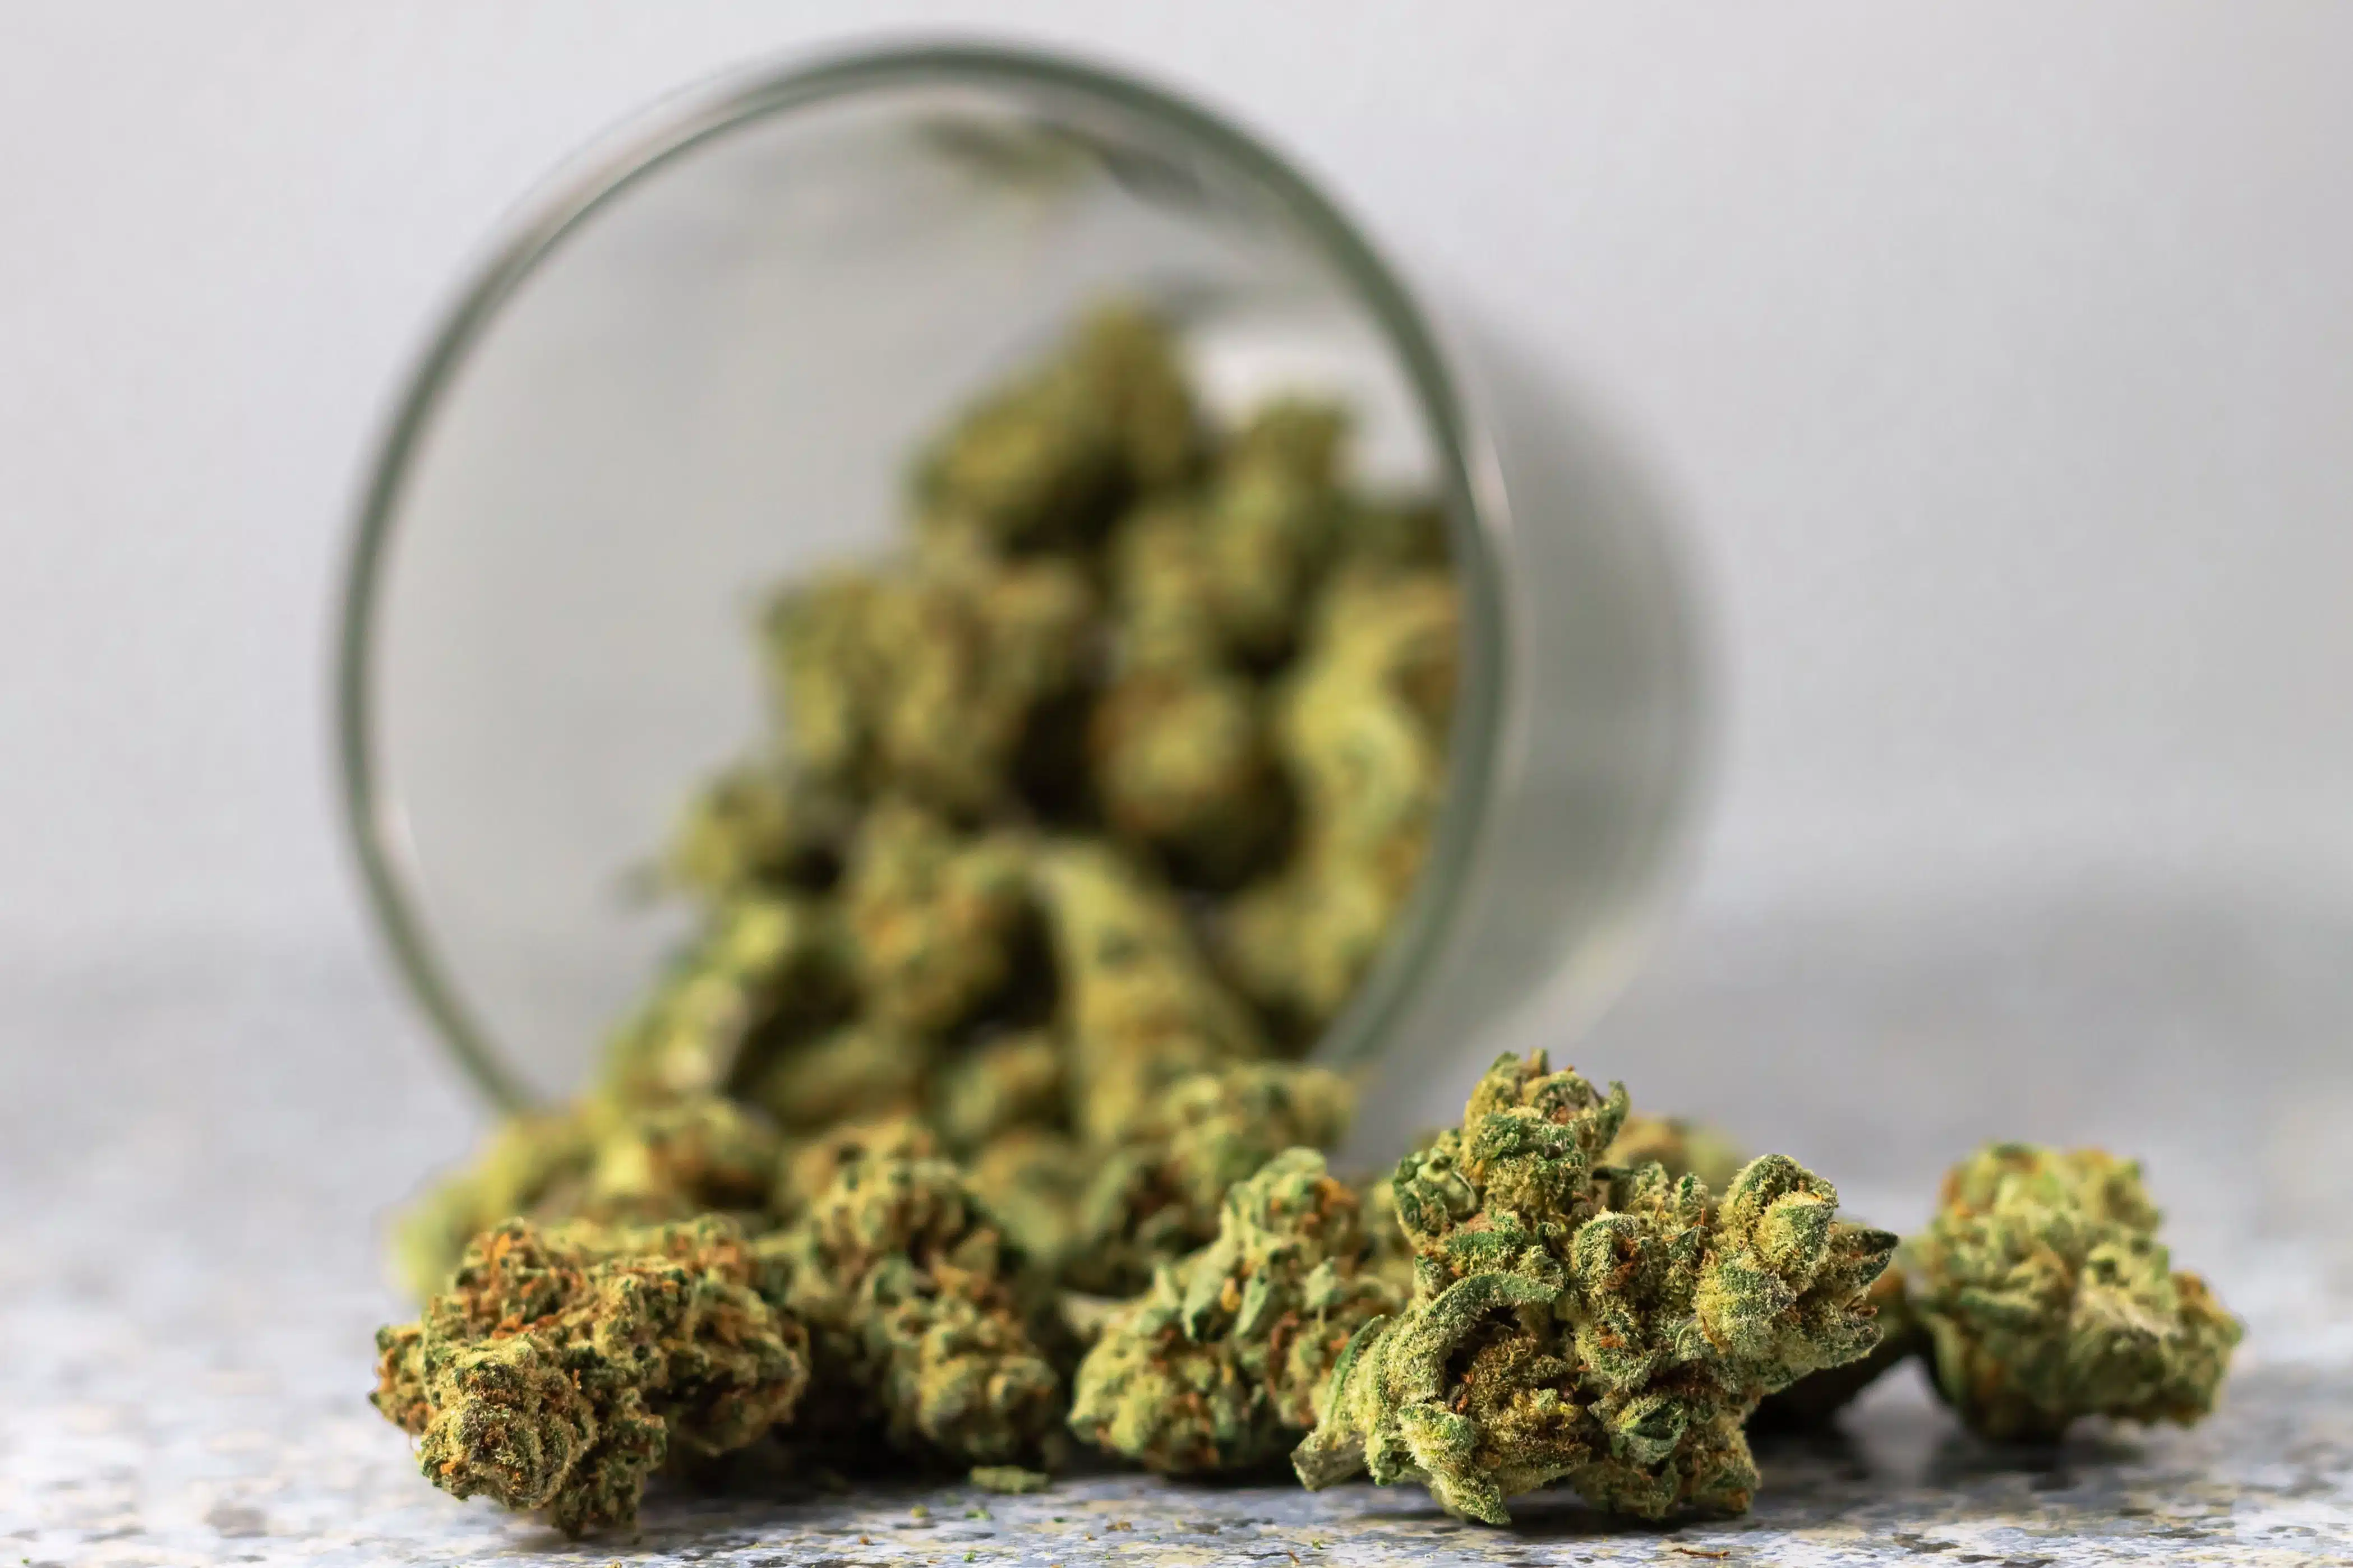 Cannabis in a glass